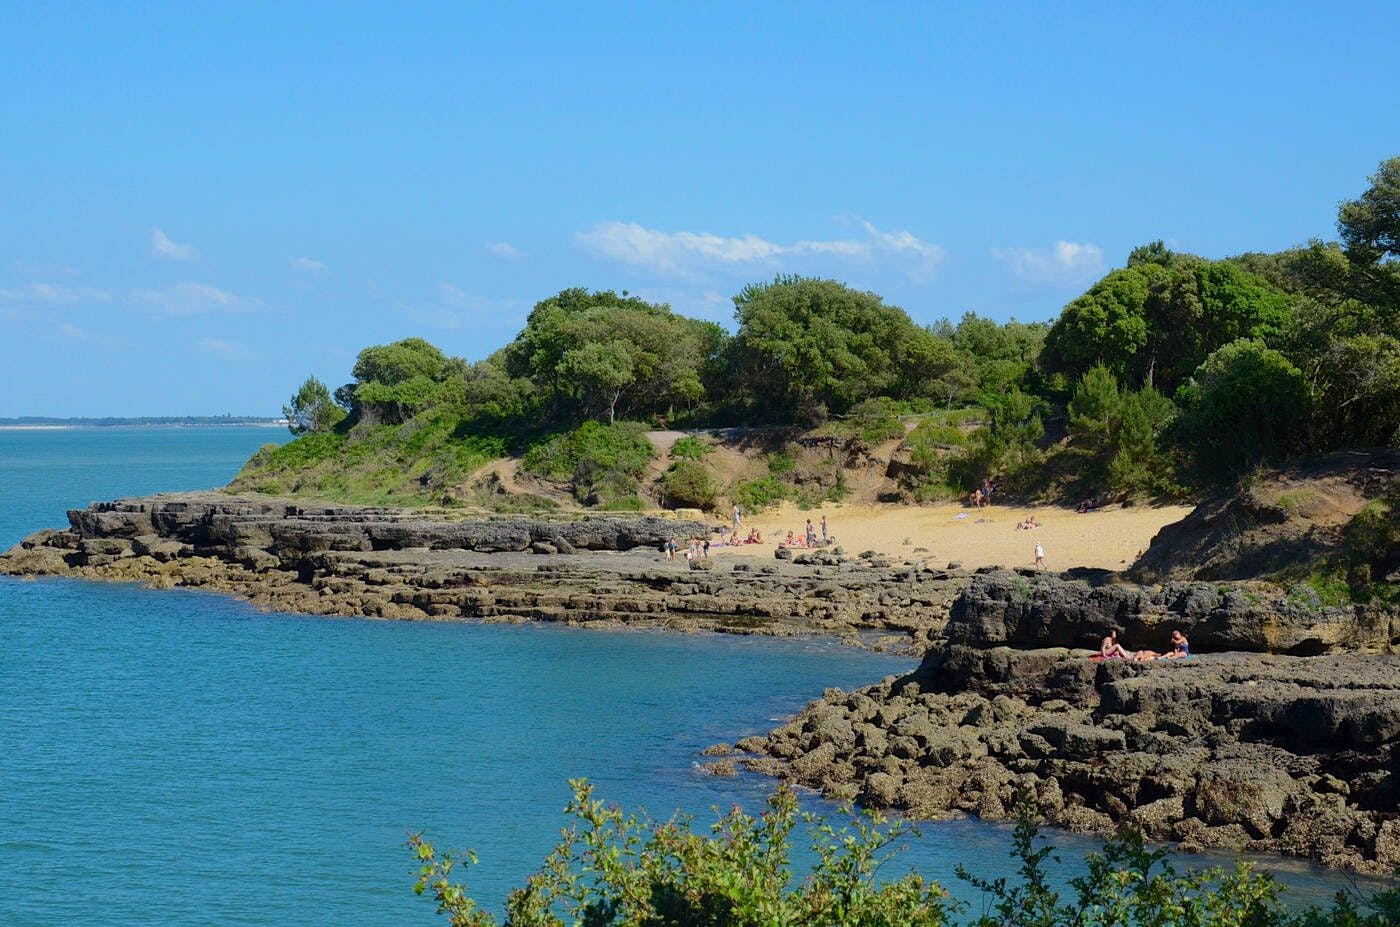 La Baby plage de l'Île d'Aix, surnommée ainsi pour sa ressemblance avec les plages méditerranéennes. ©Samuel Courtois